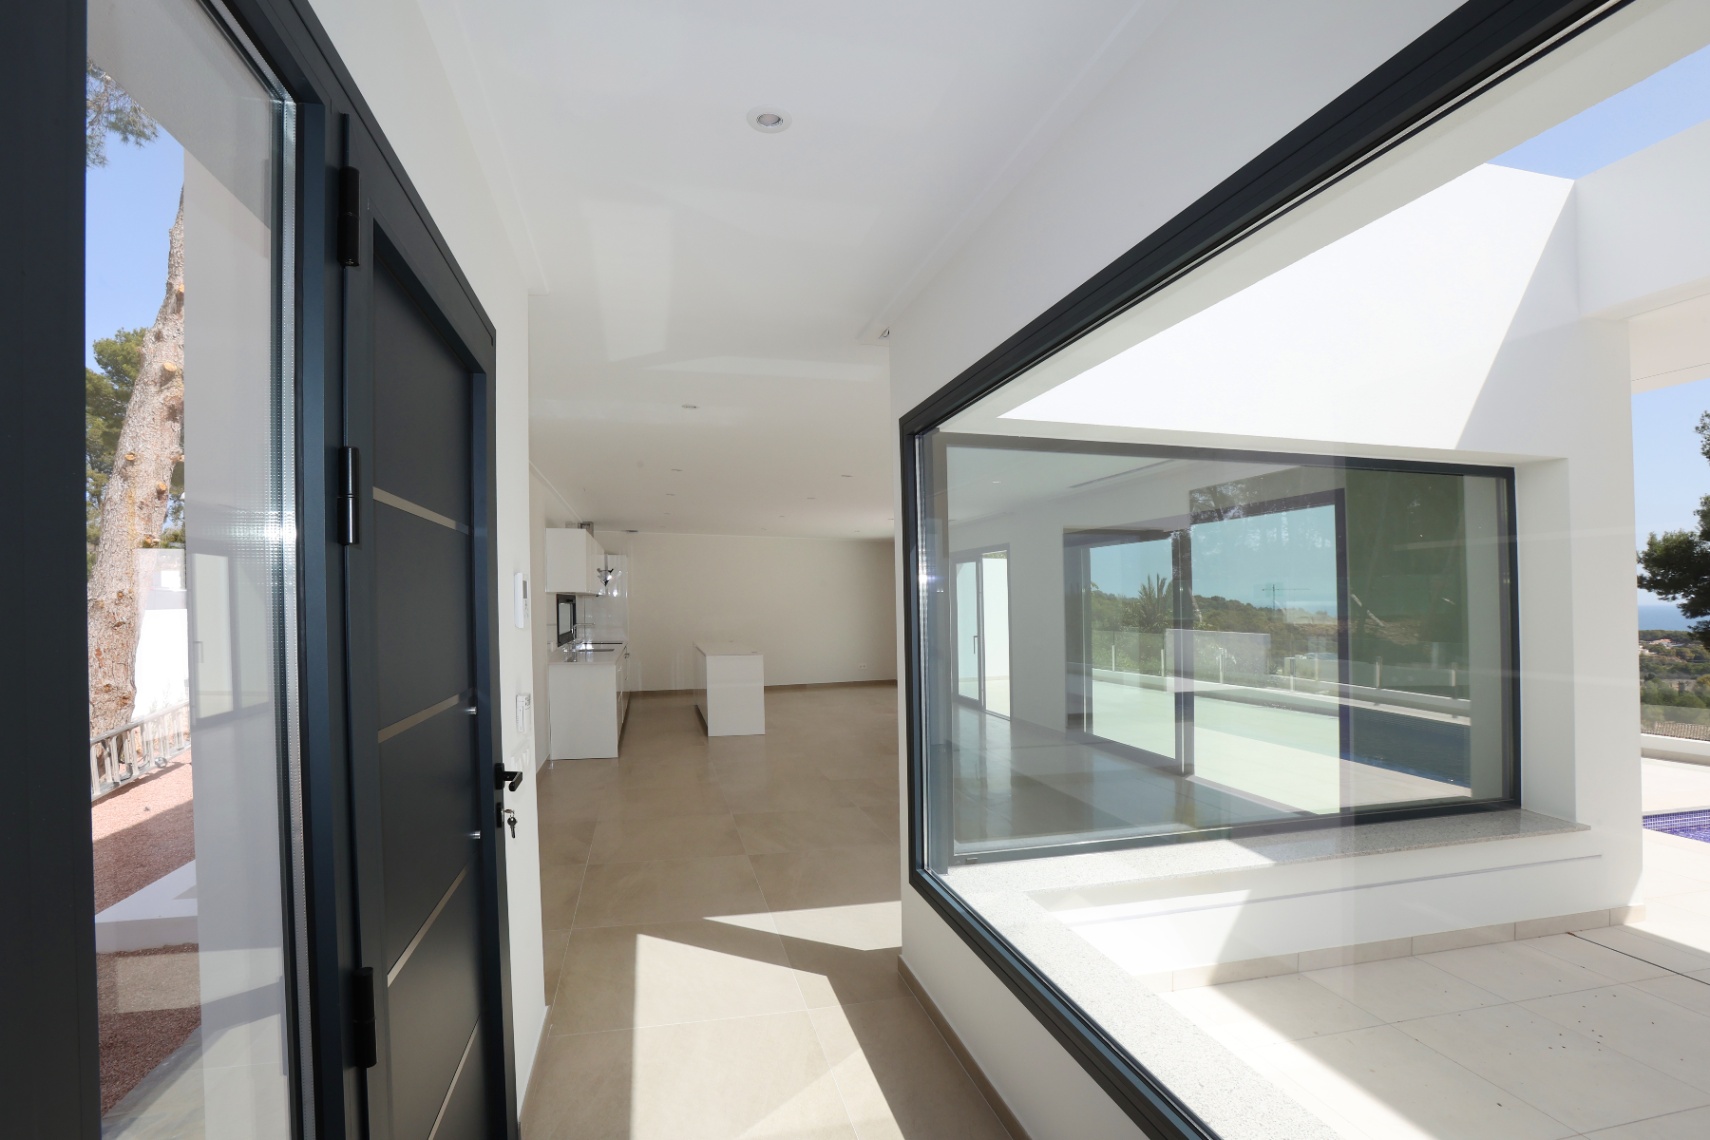 Ontdek deze prachtige, onlangs voltooide moderne villa in Benissa